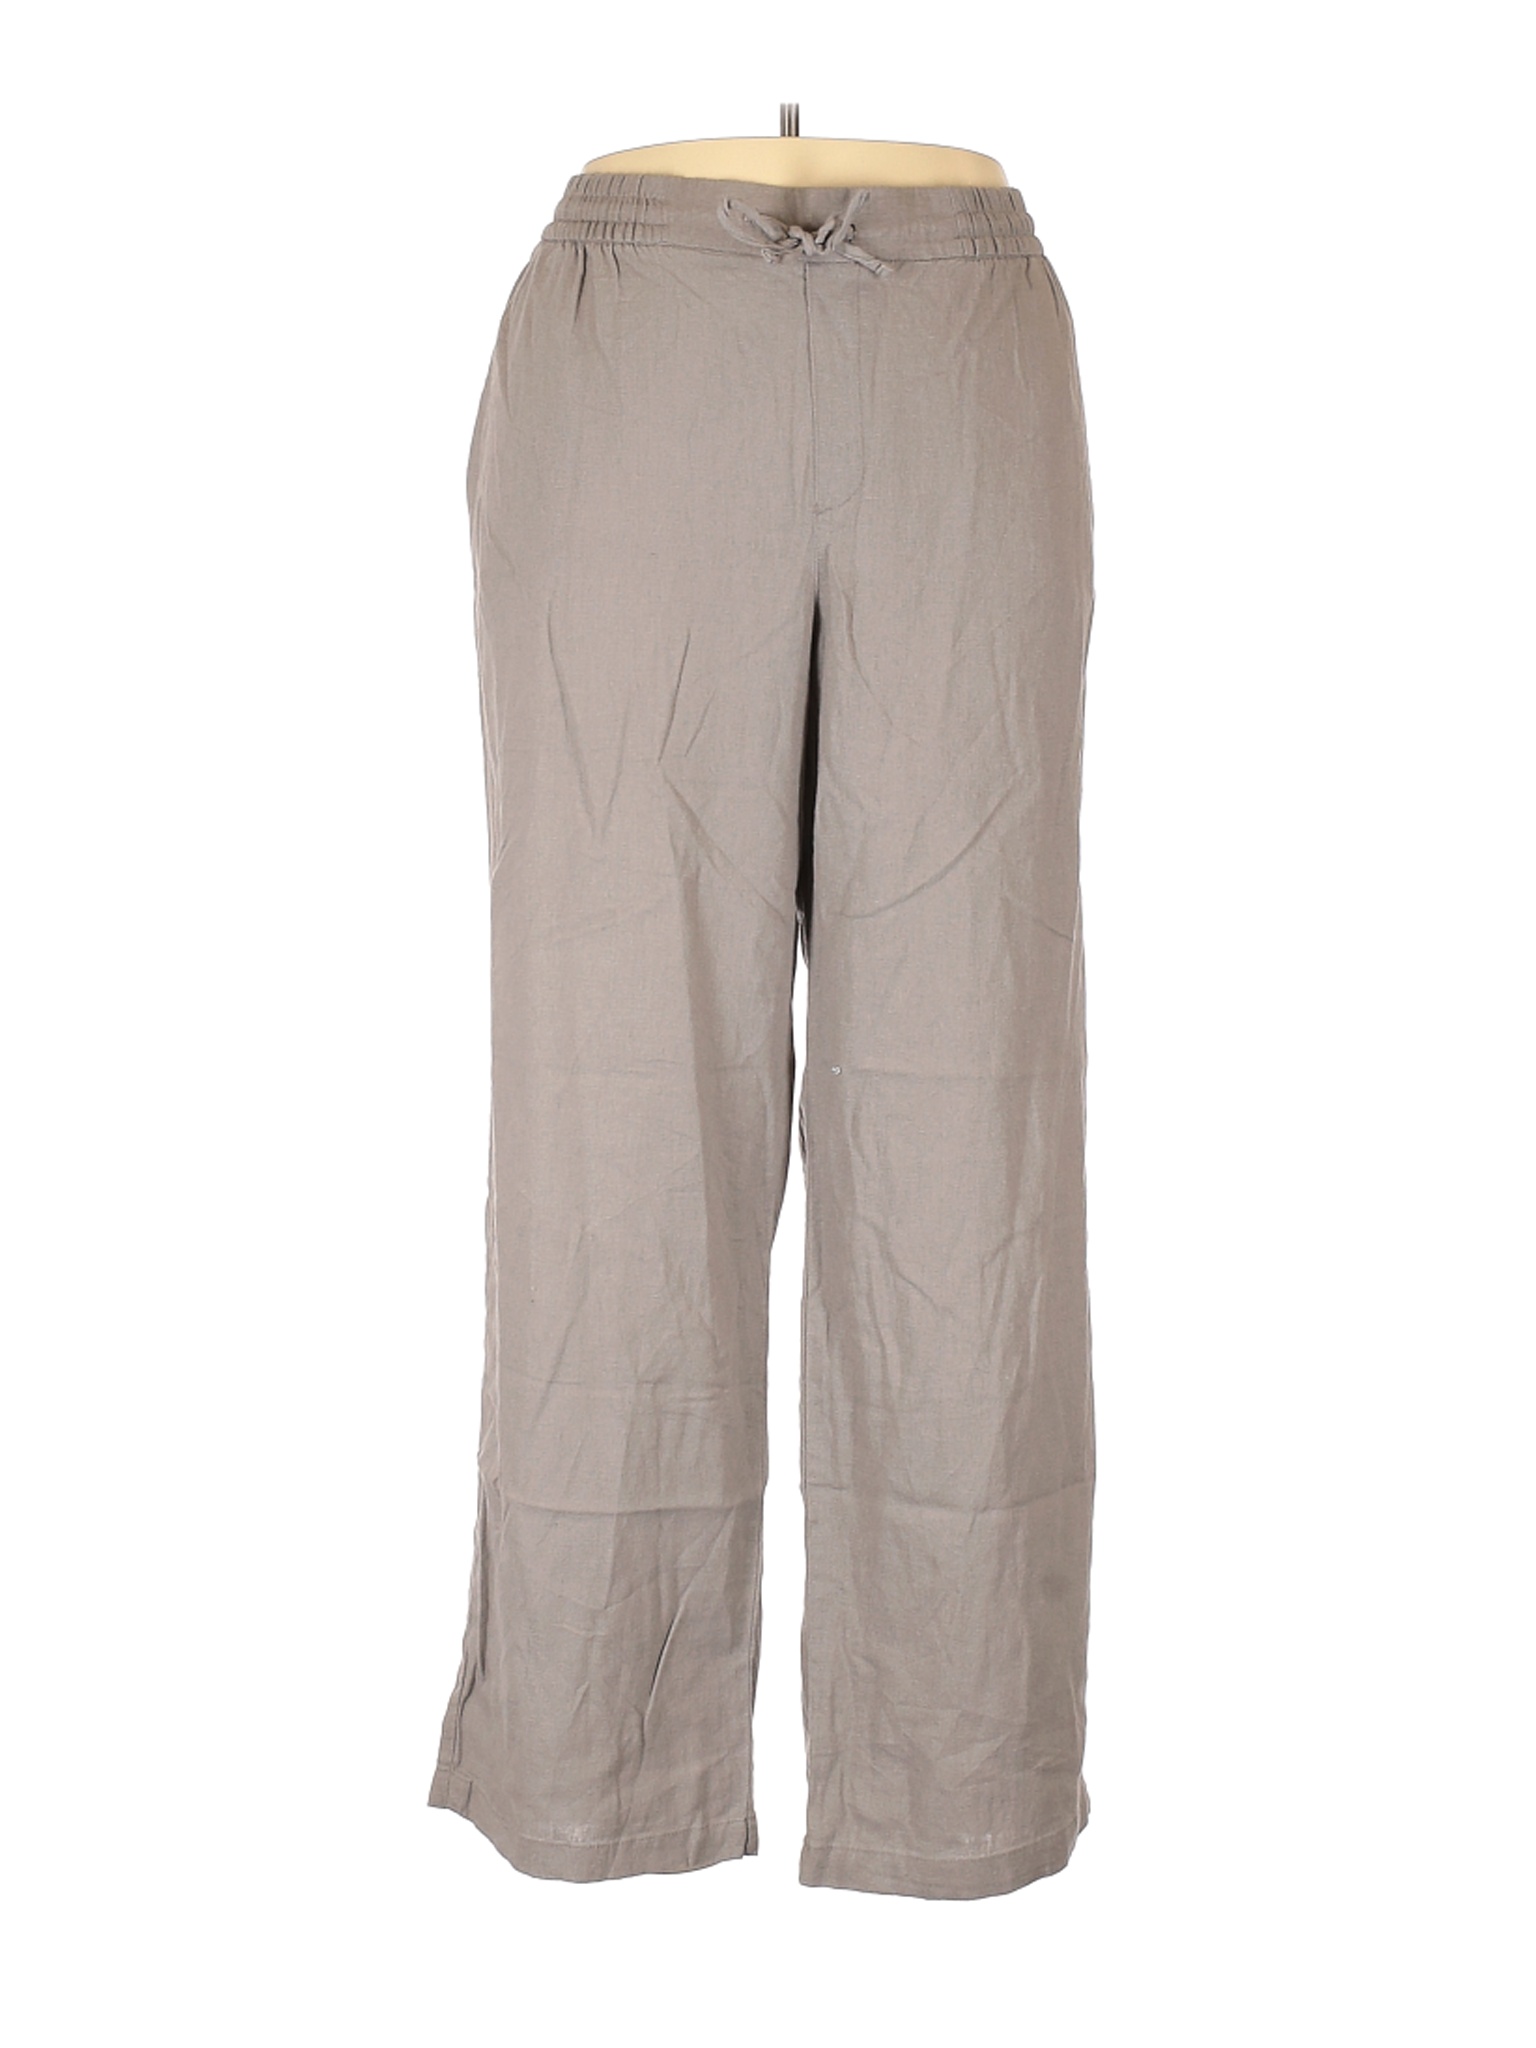 NWT Old Navy Women Gray Linen Pants XL | eBay